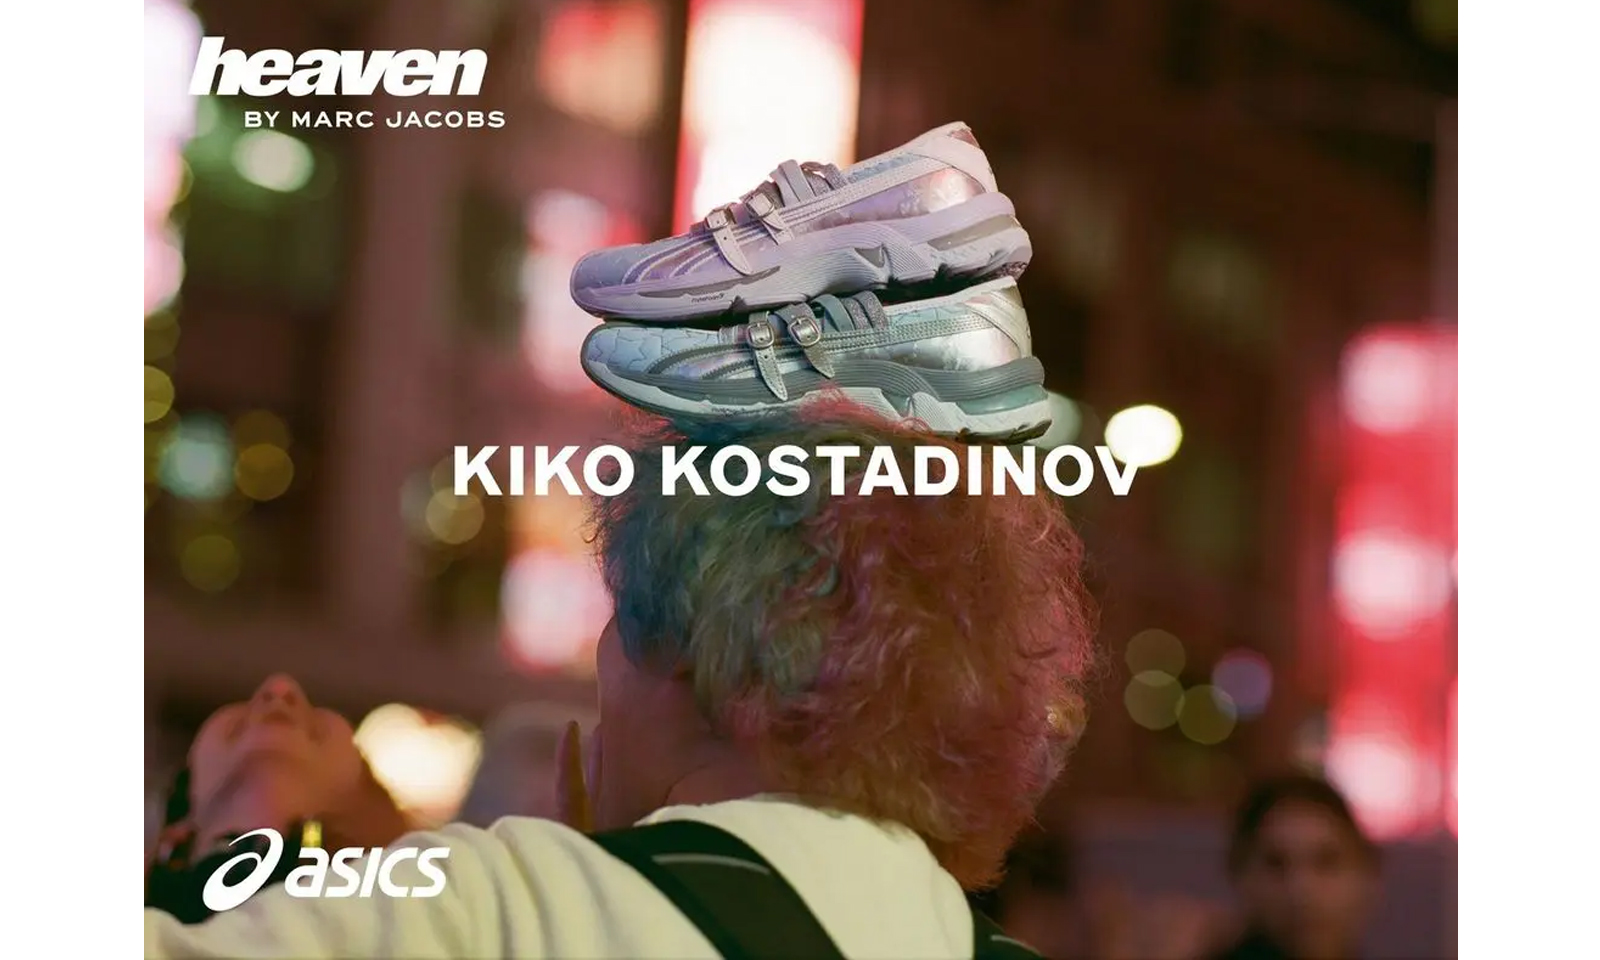 Kiko Kostadinov x Heaven by Marc Jacobs x ASICS GEL-LOKROS 合作鞋款正式登场